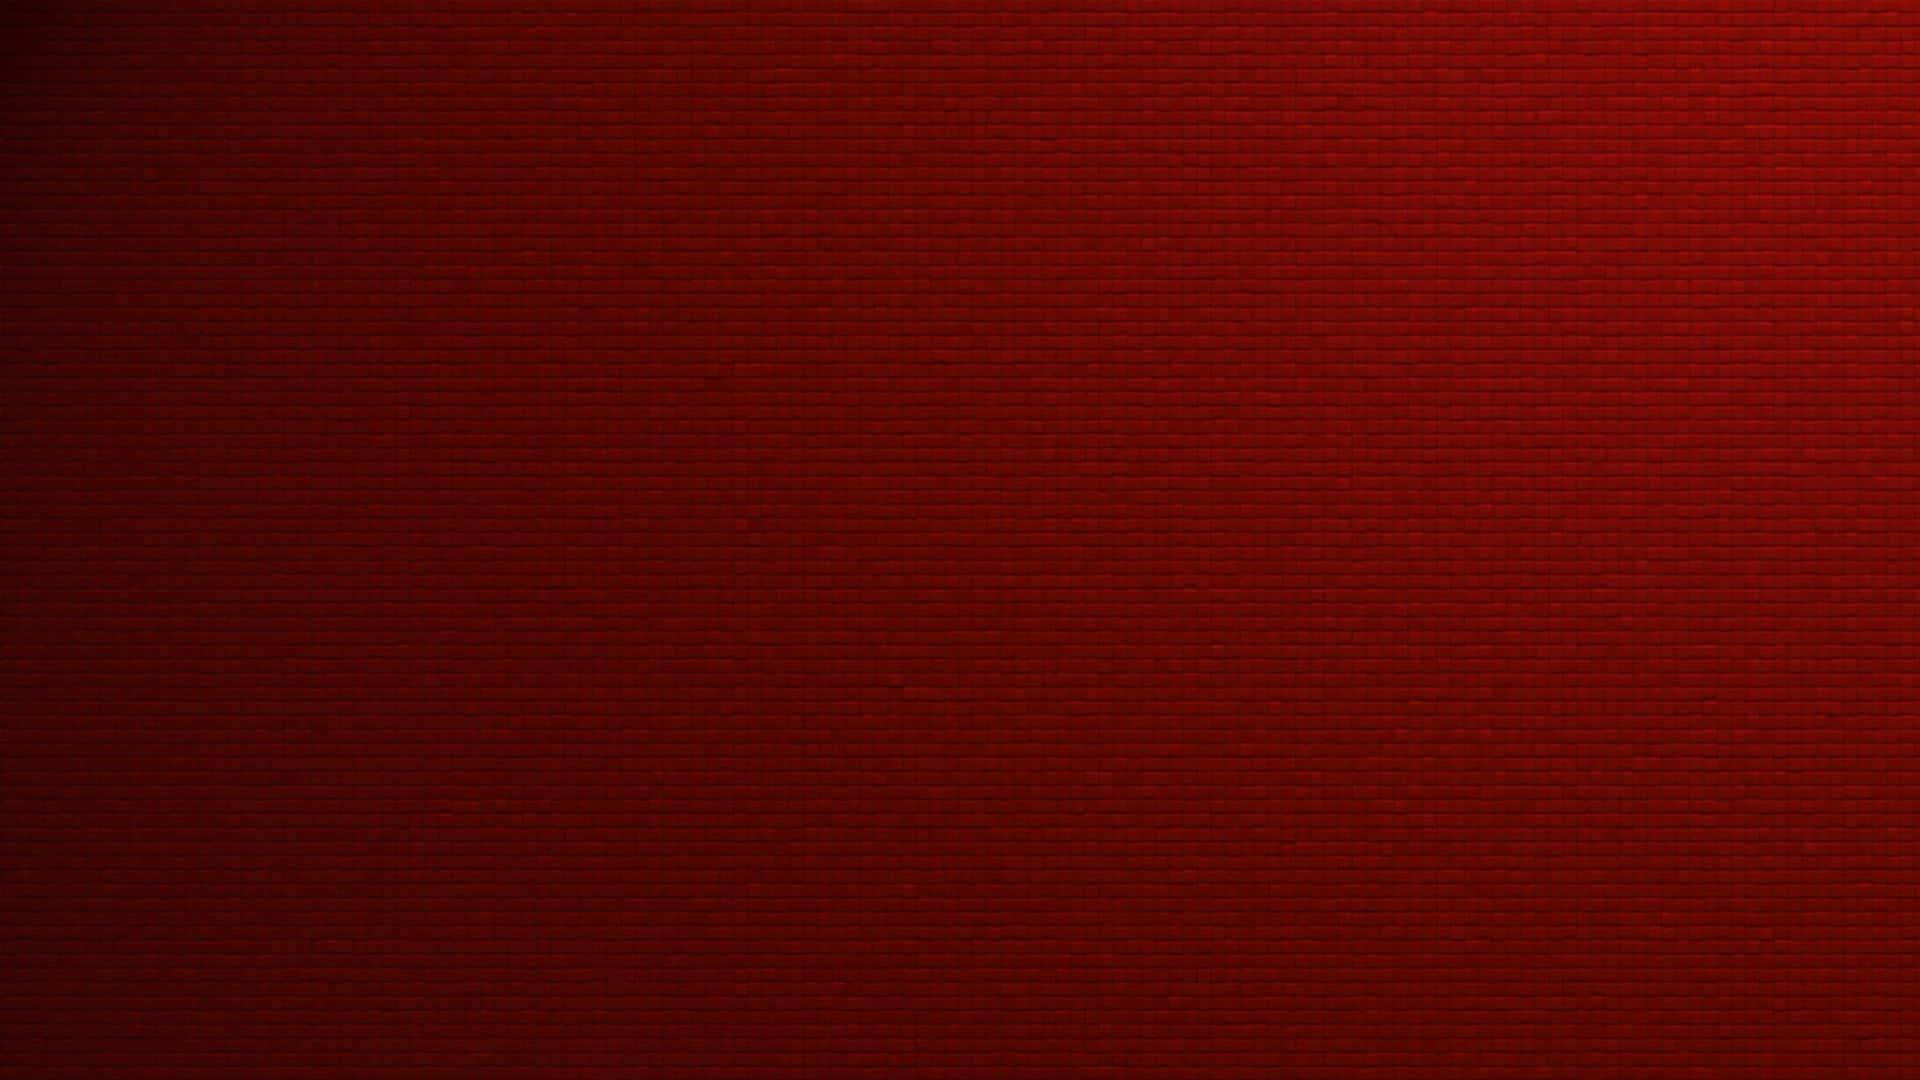 Unique Monochrome Red Background